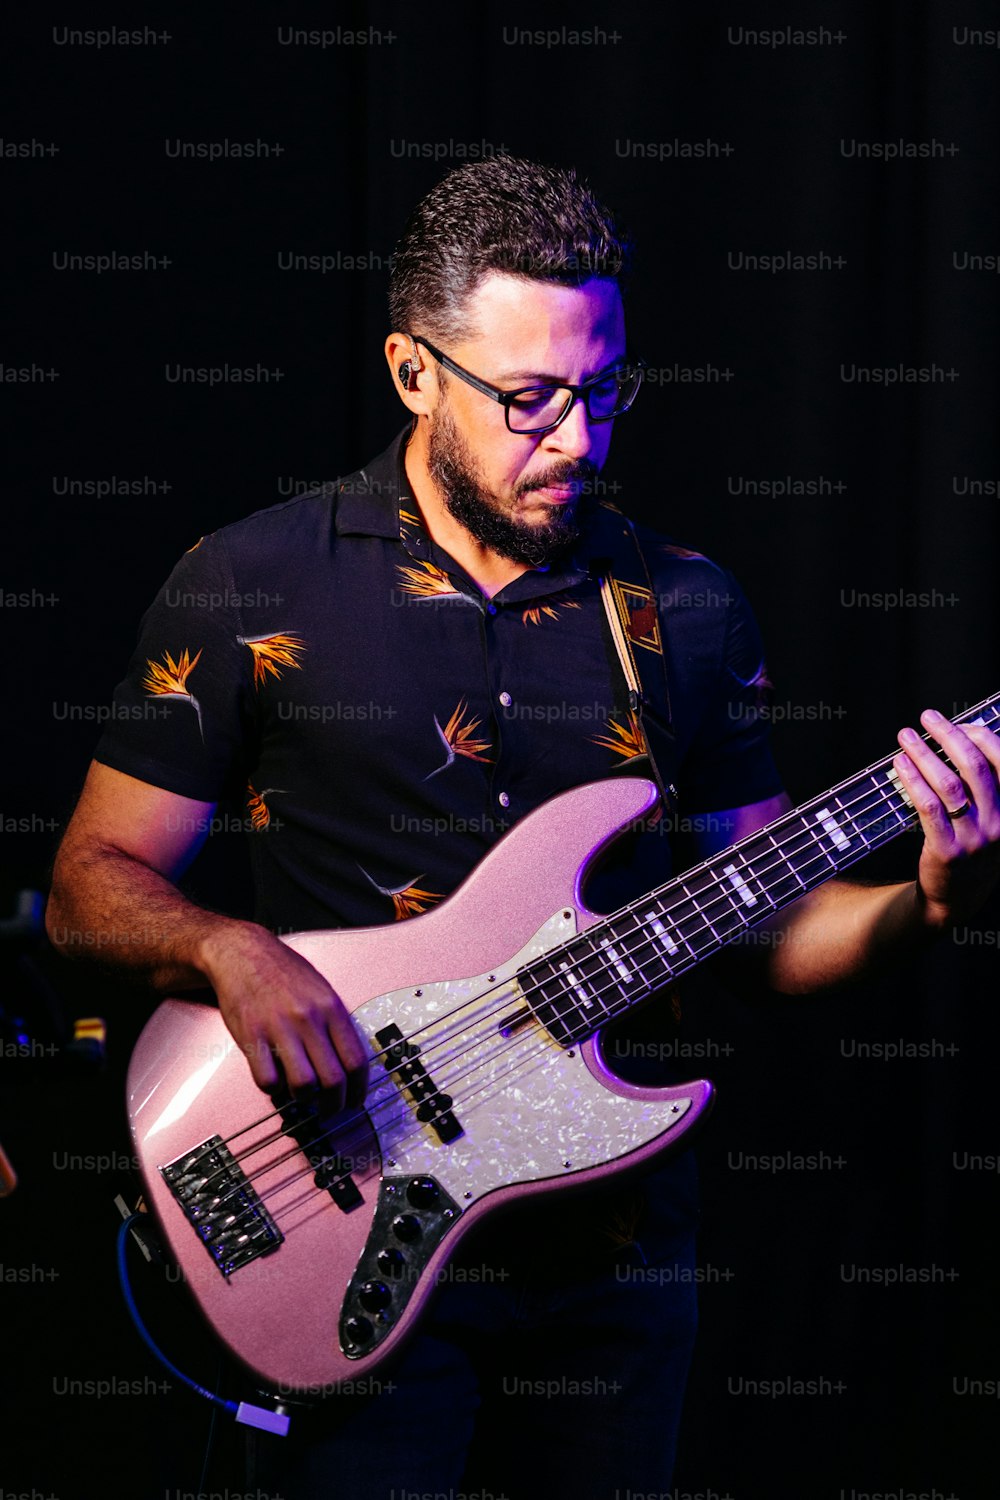 Un homme avec des lunettes jouant de la guitare rose